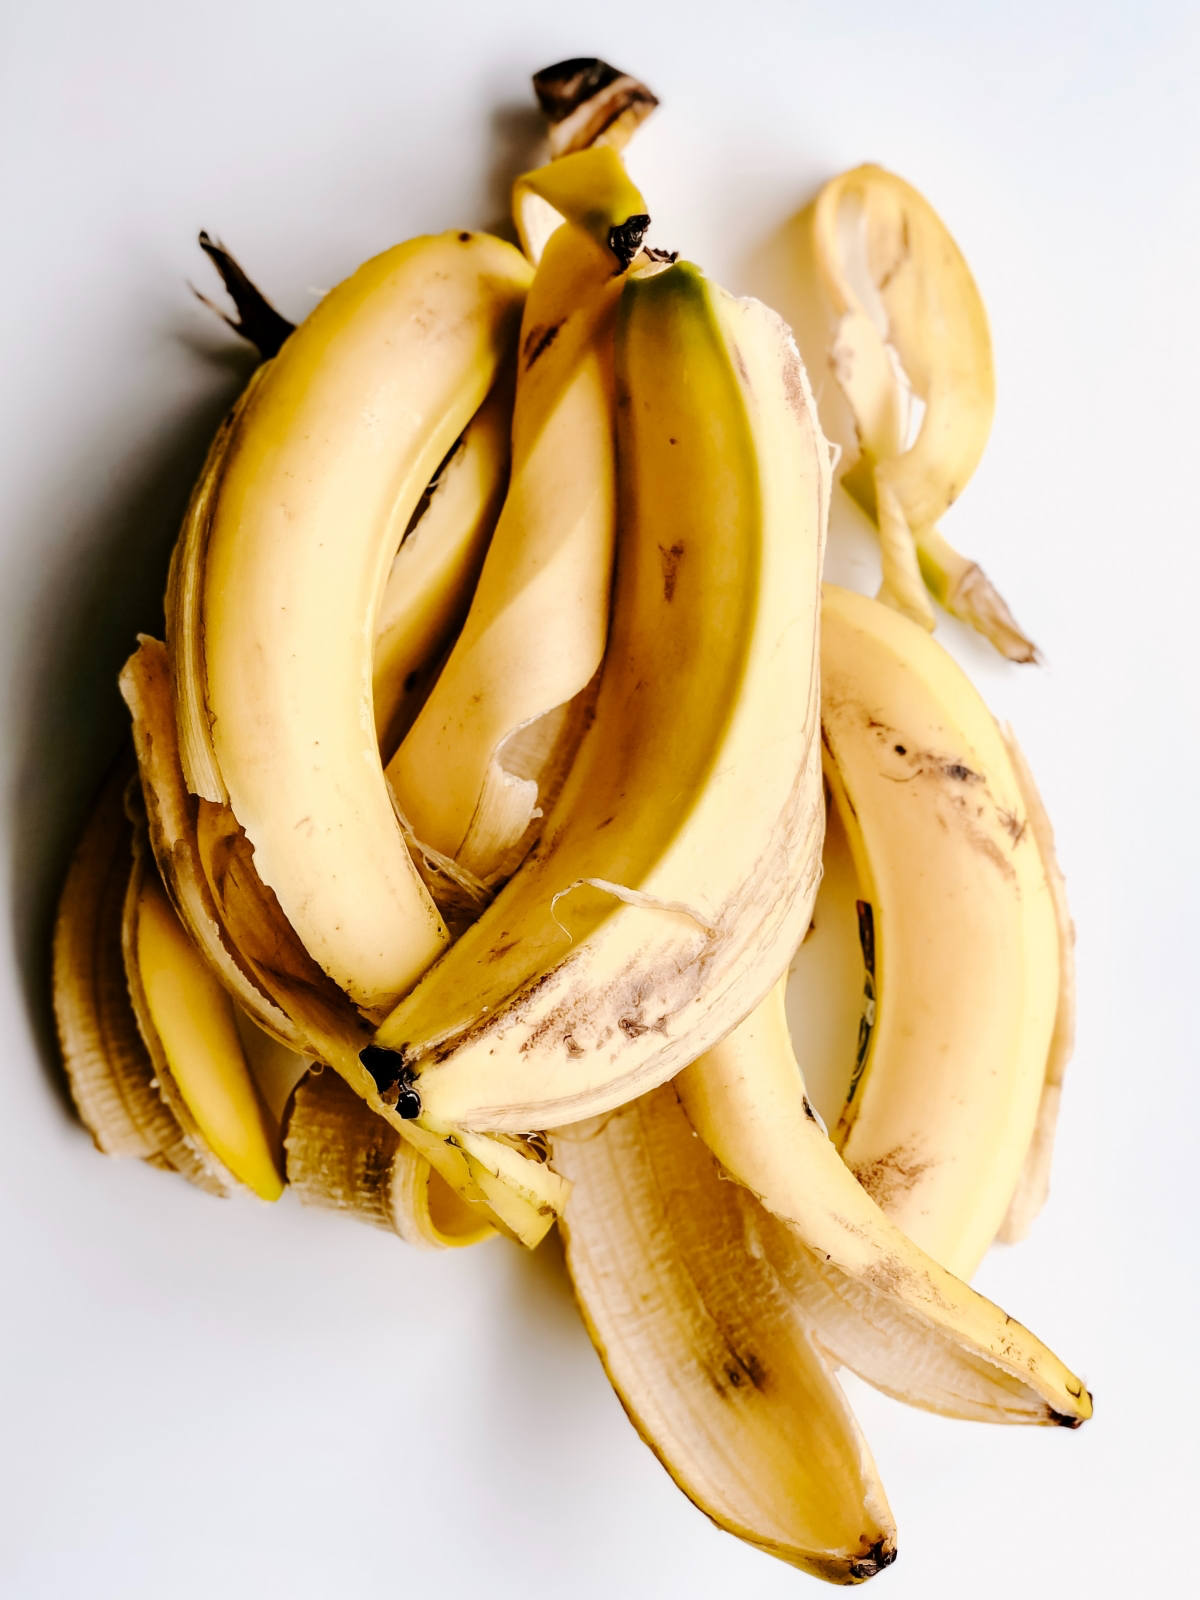 how to use banana peel for dark spots